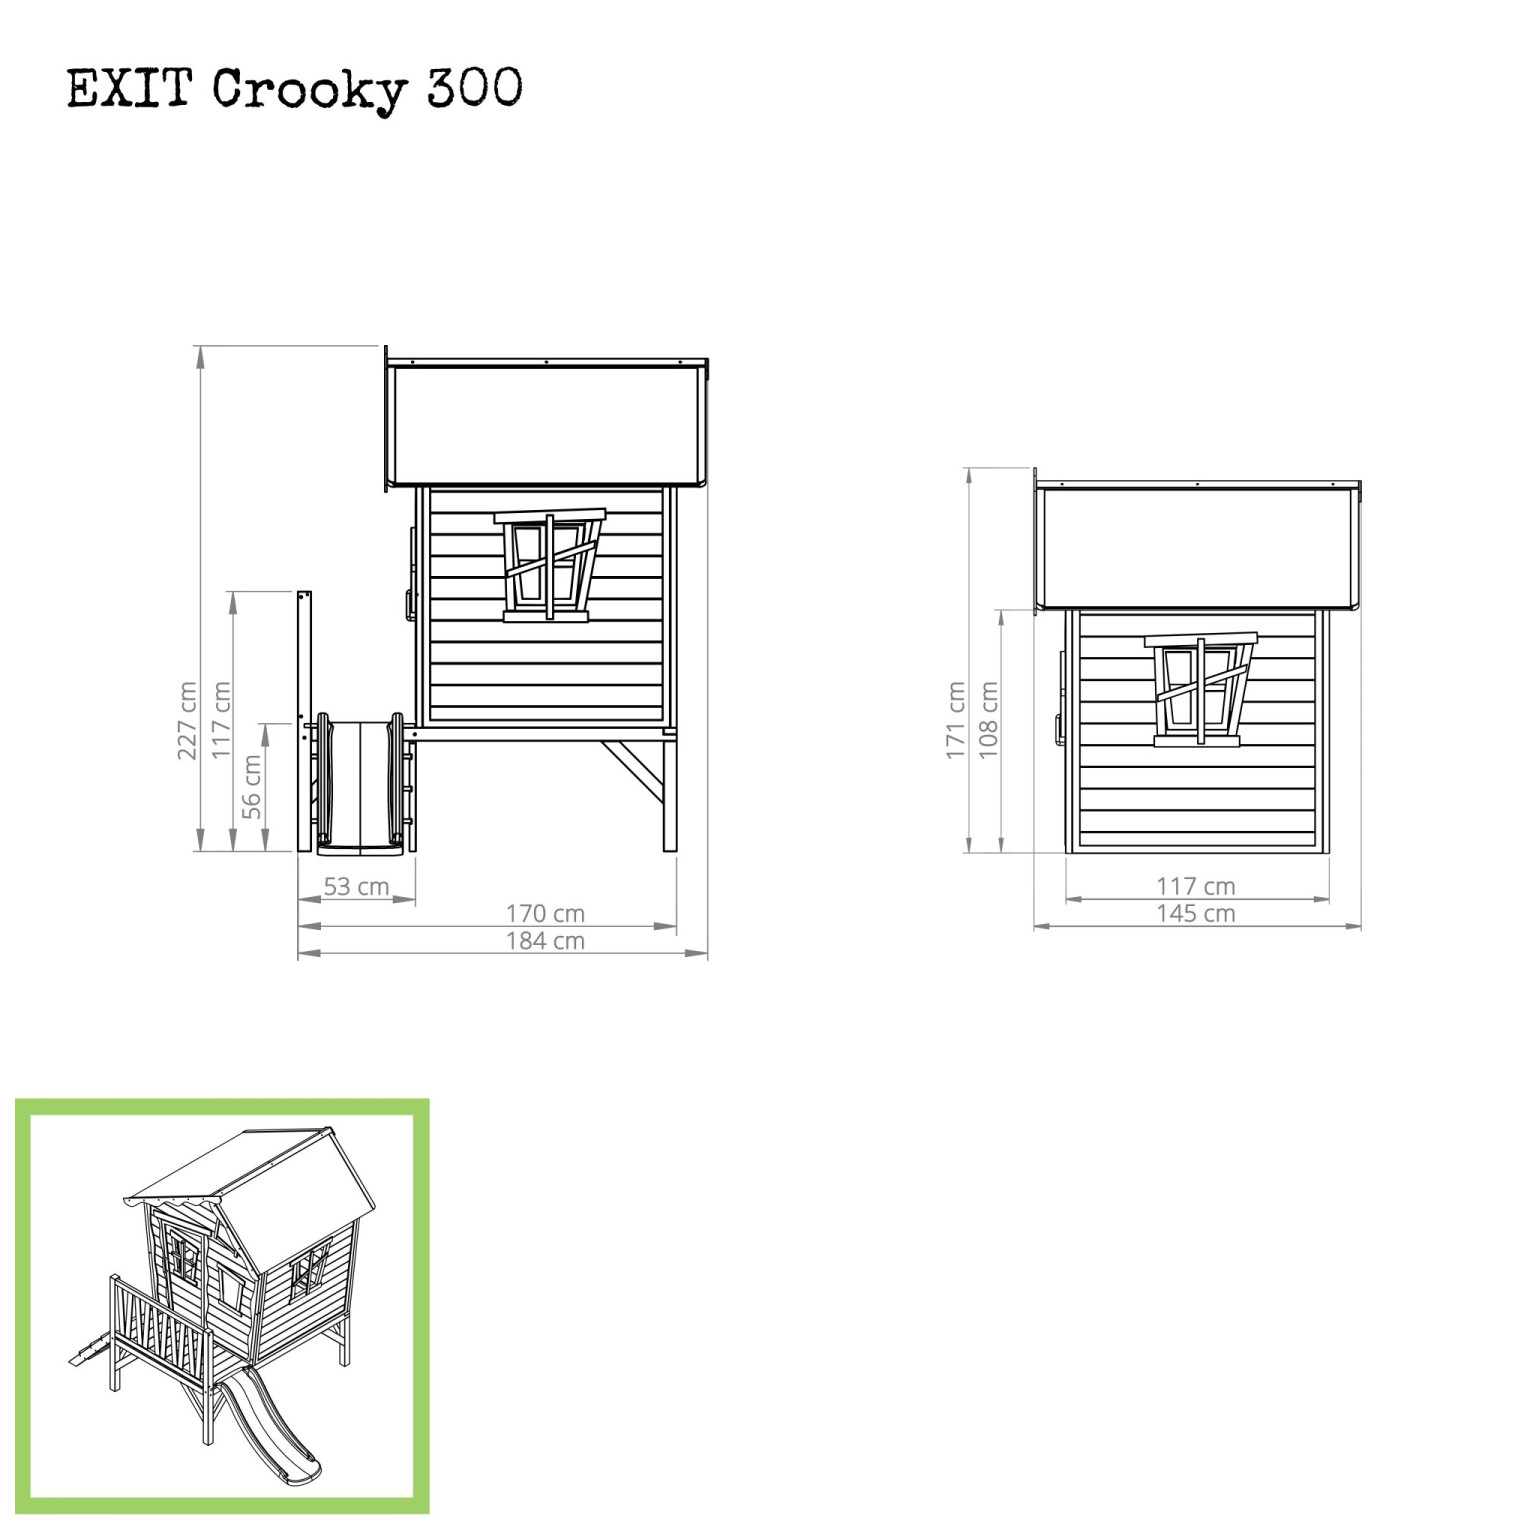 EXIT Crooky 300 houten speelhuis - grijsbeige